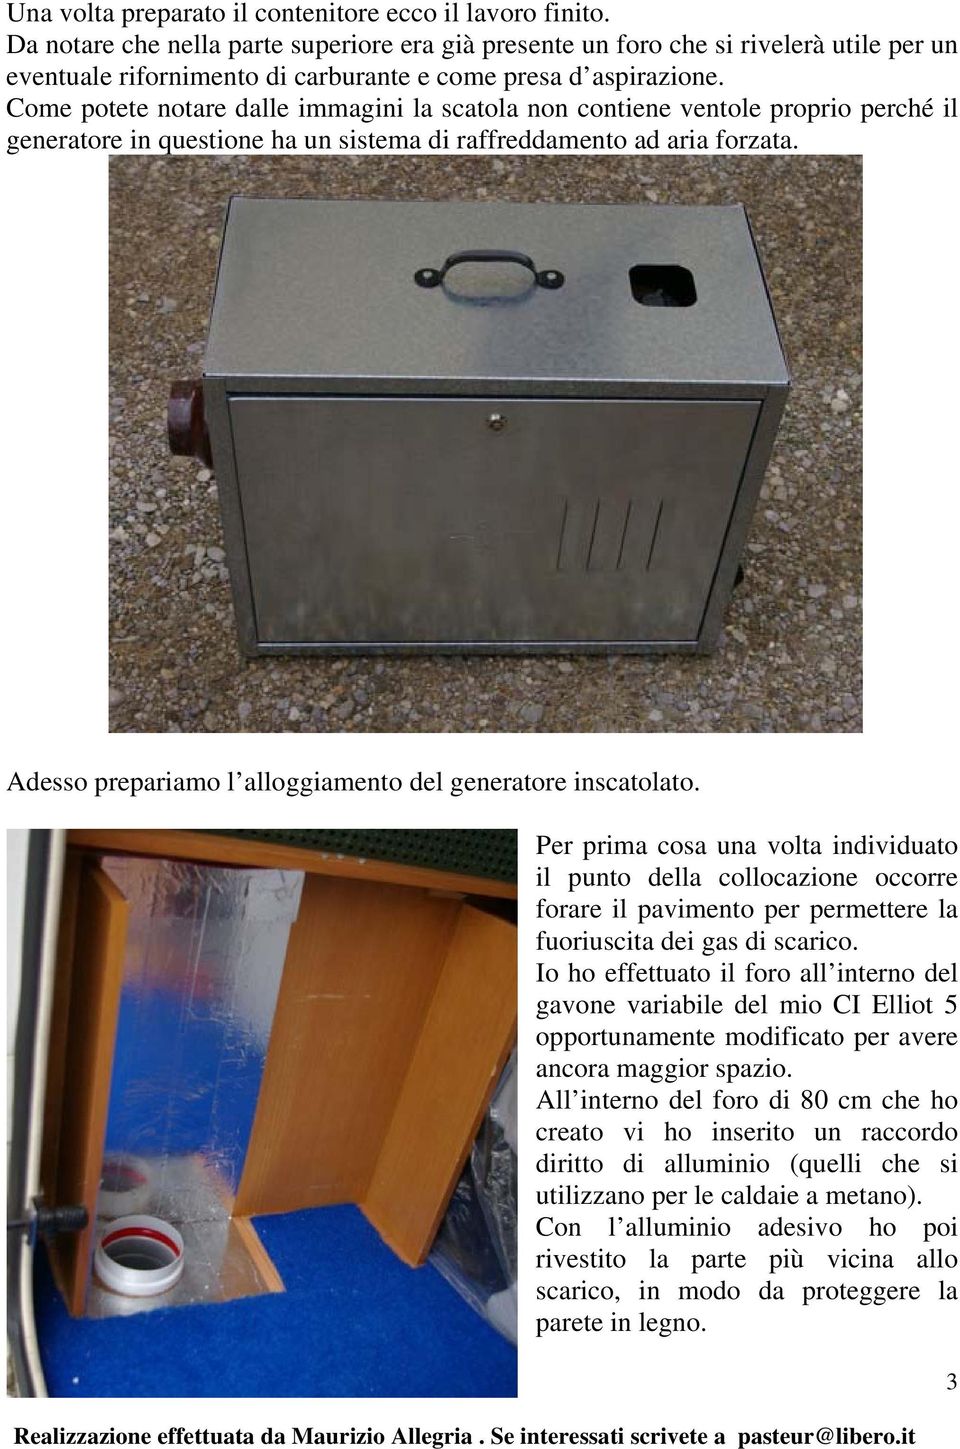 Come potete notare dalle immagini la scatola non contiene ventole proprio perché il generatore in questione ha un sistema di raffreddamento ad aria forzata.